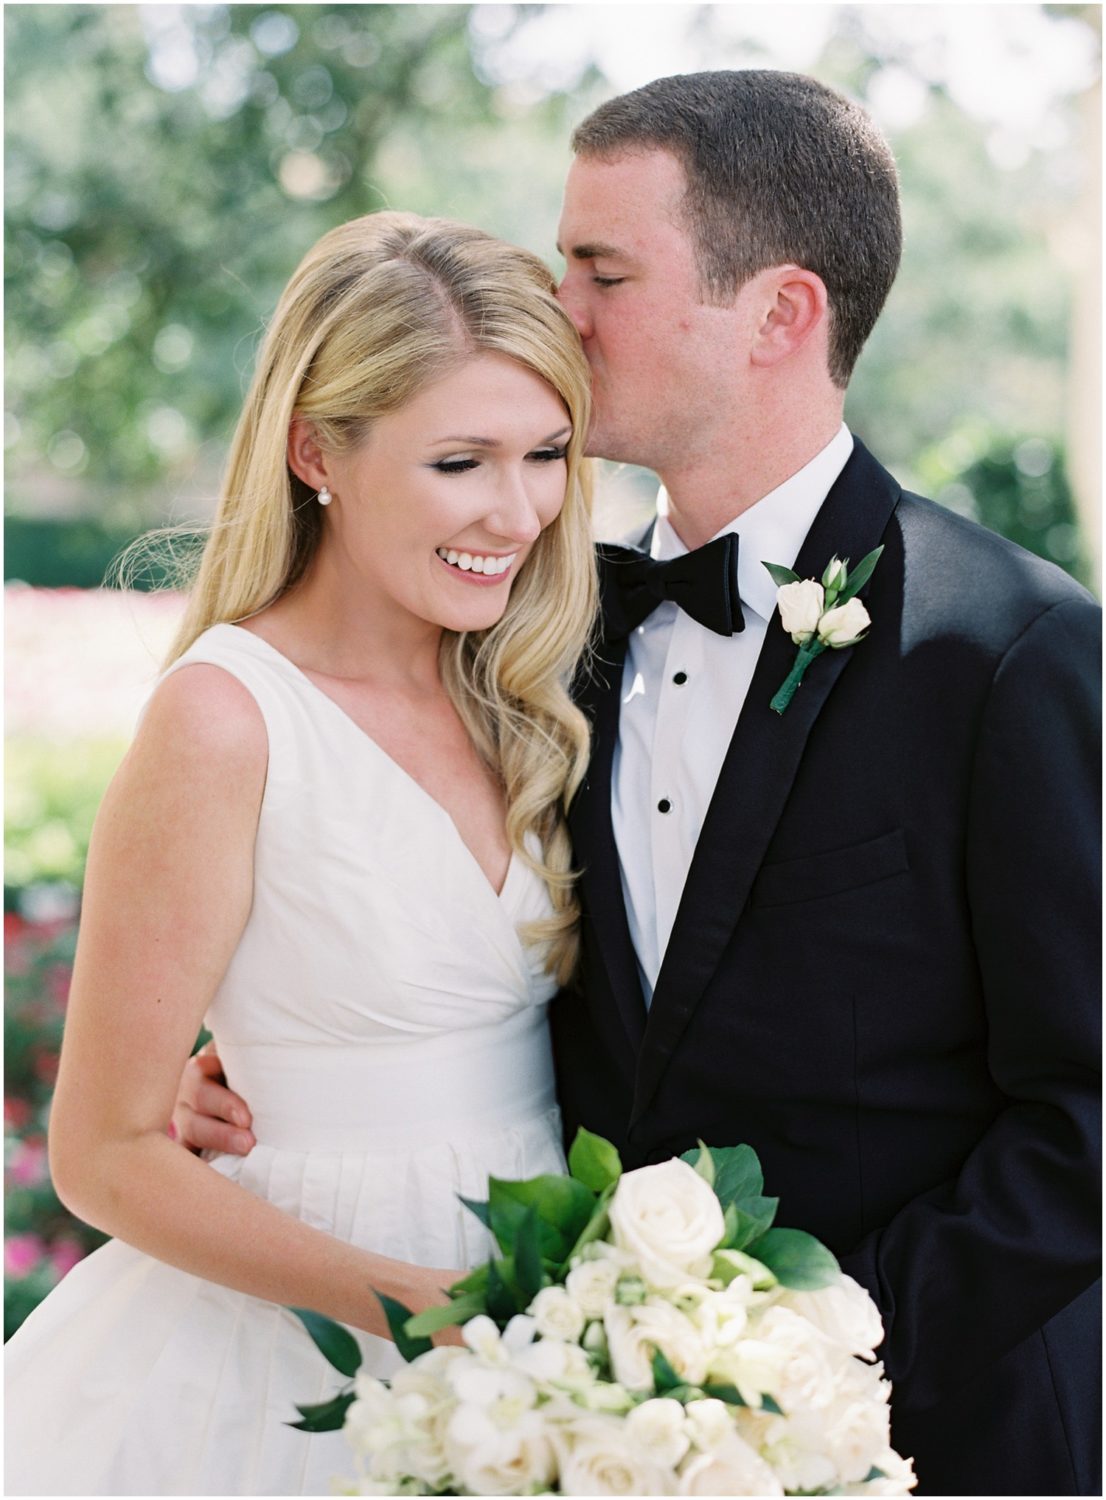 JANA & WILLIAM | Ashley Upchurch Photography - MS Wedding Photographer